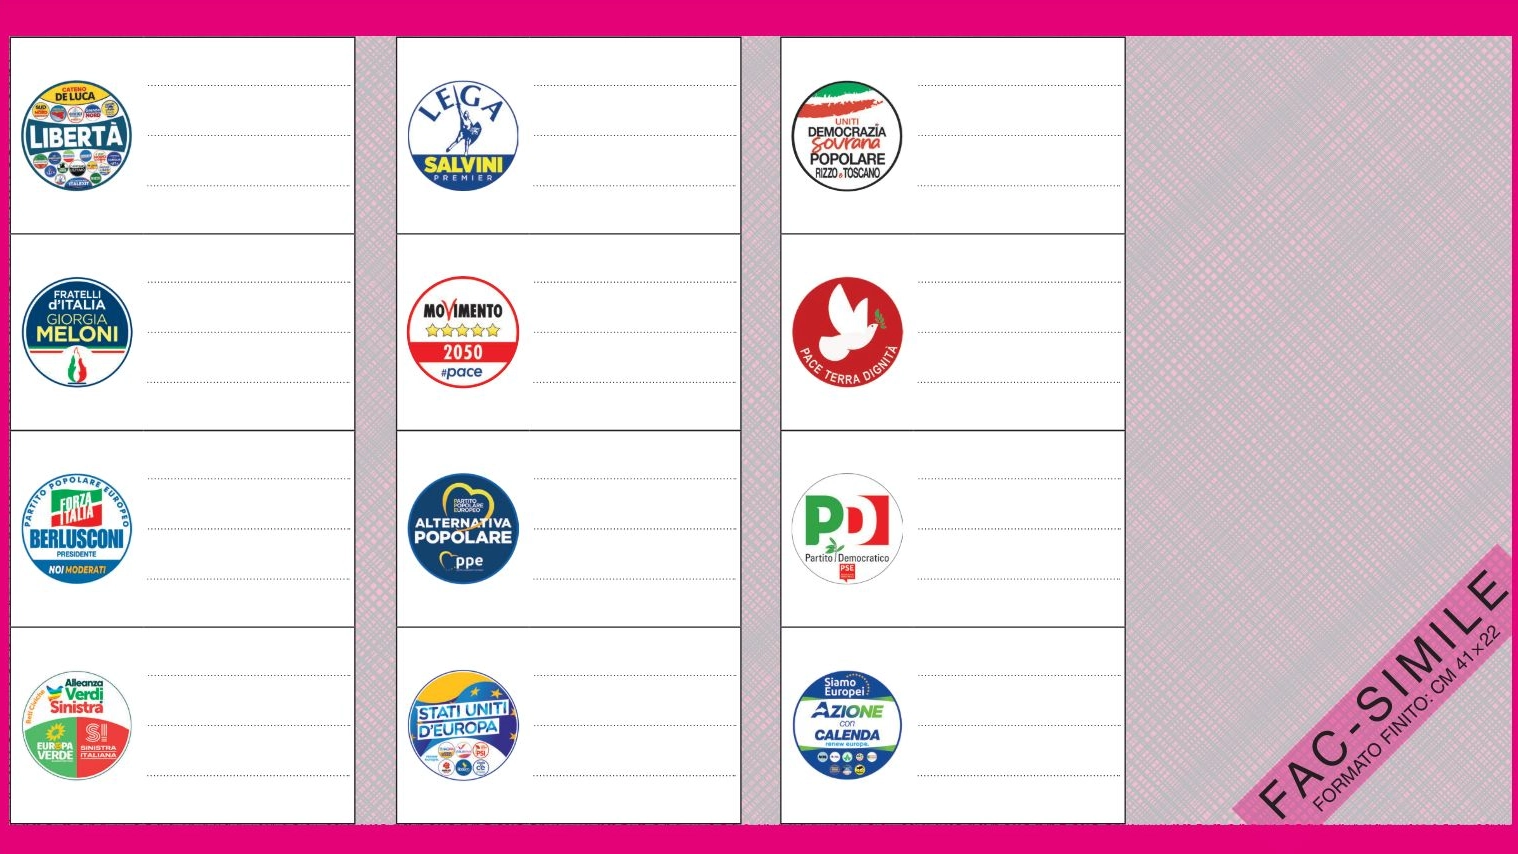 Circoscrizione elettorale III - Italia centrale (Toscana, Umbria, Marche, Lazio)